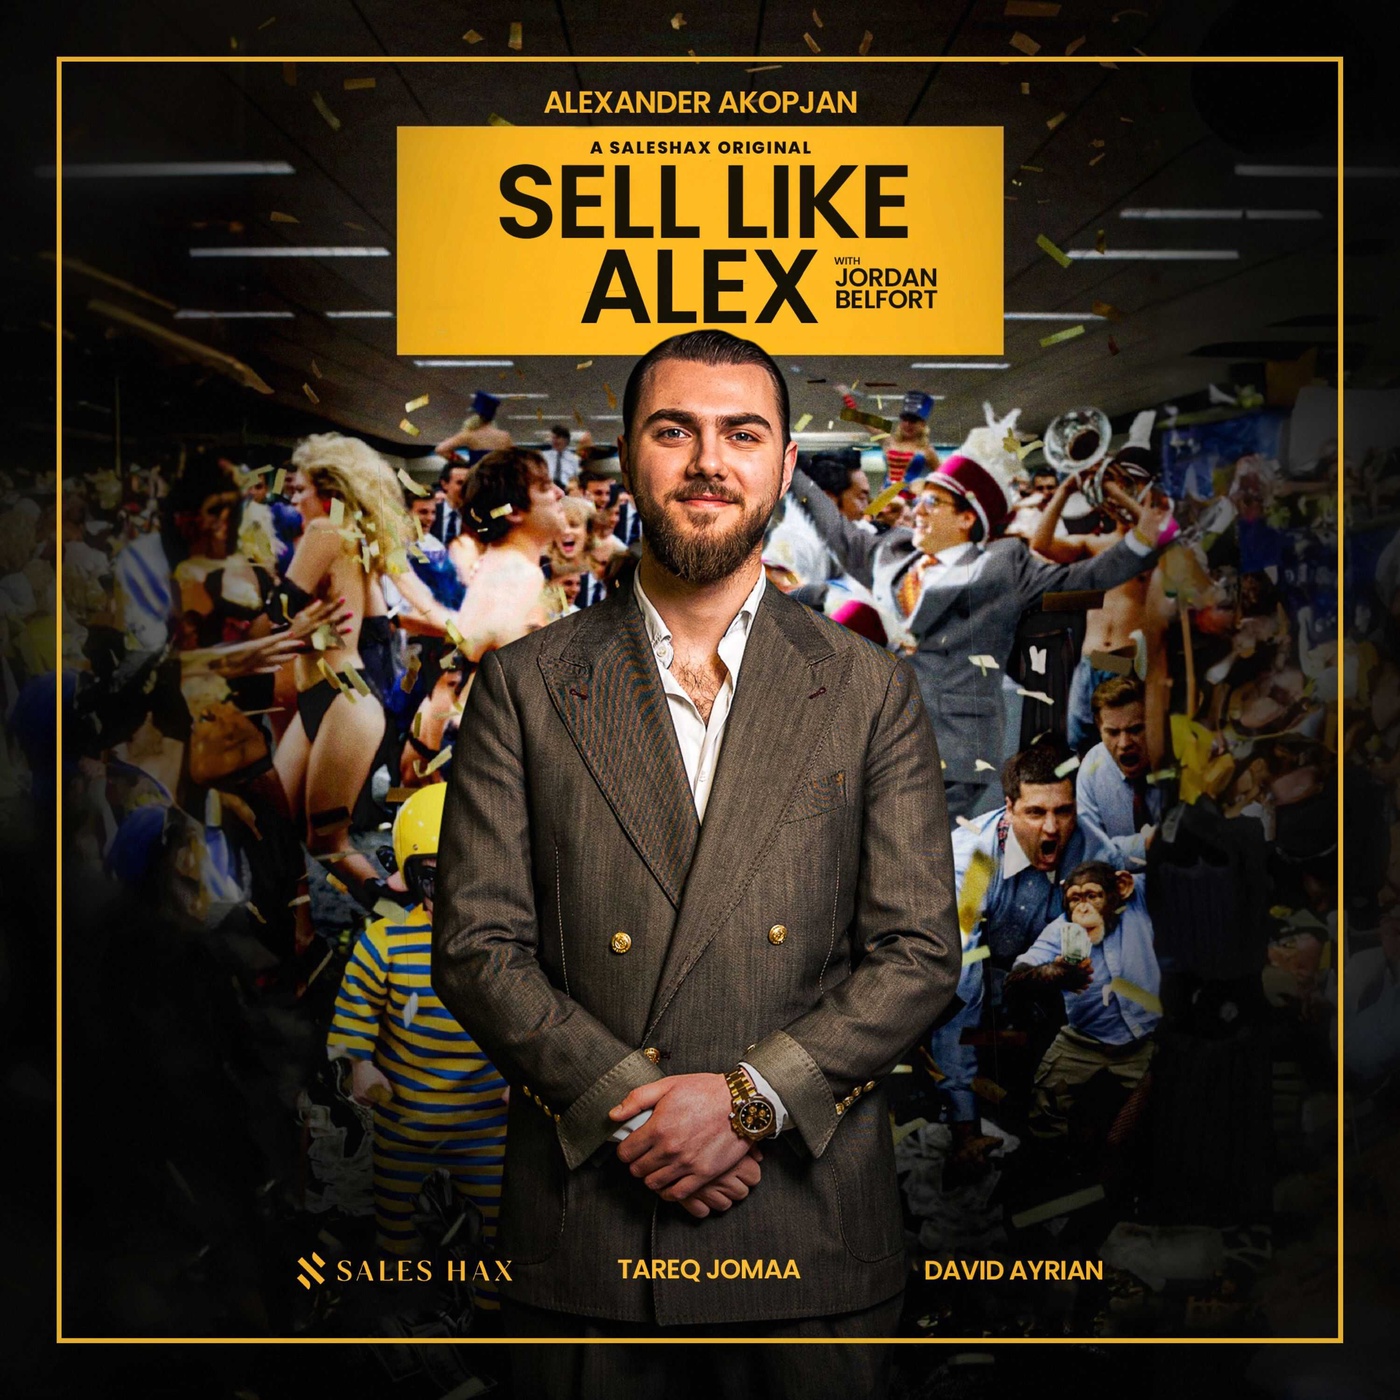 Der Weg zum Verkaufserfolg: Jordan Belfort beim 'Sell like Alex'-Event